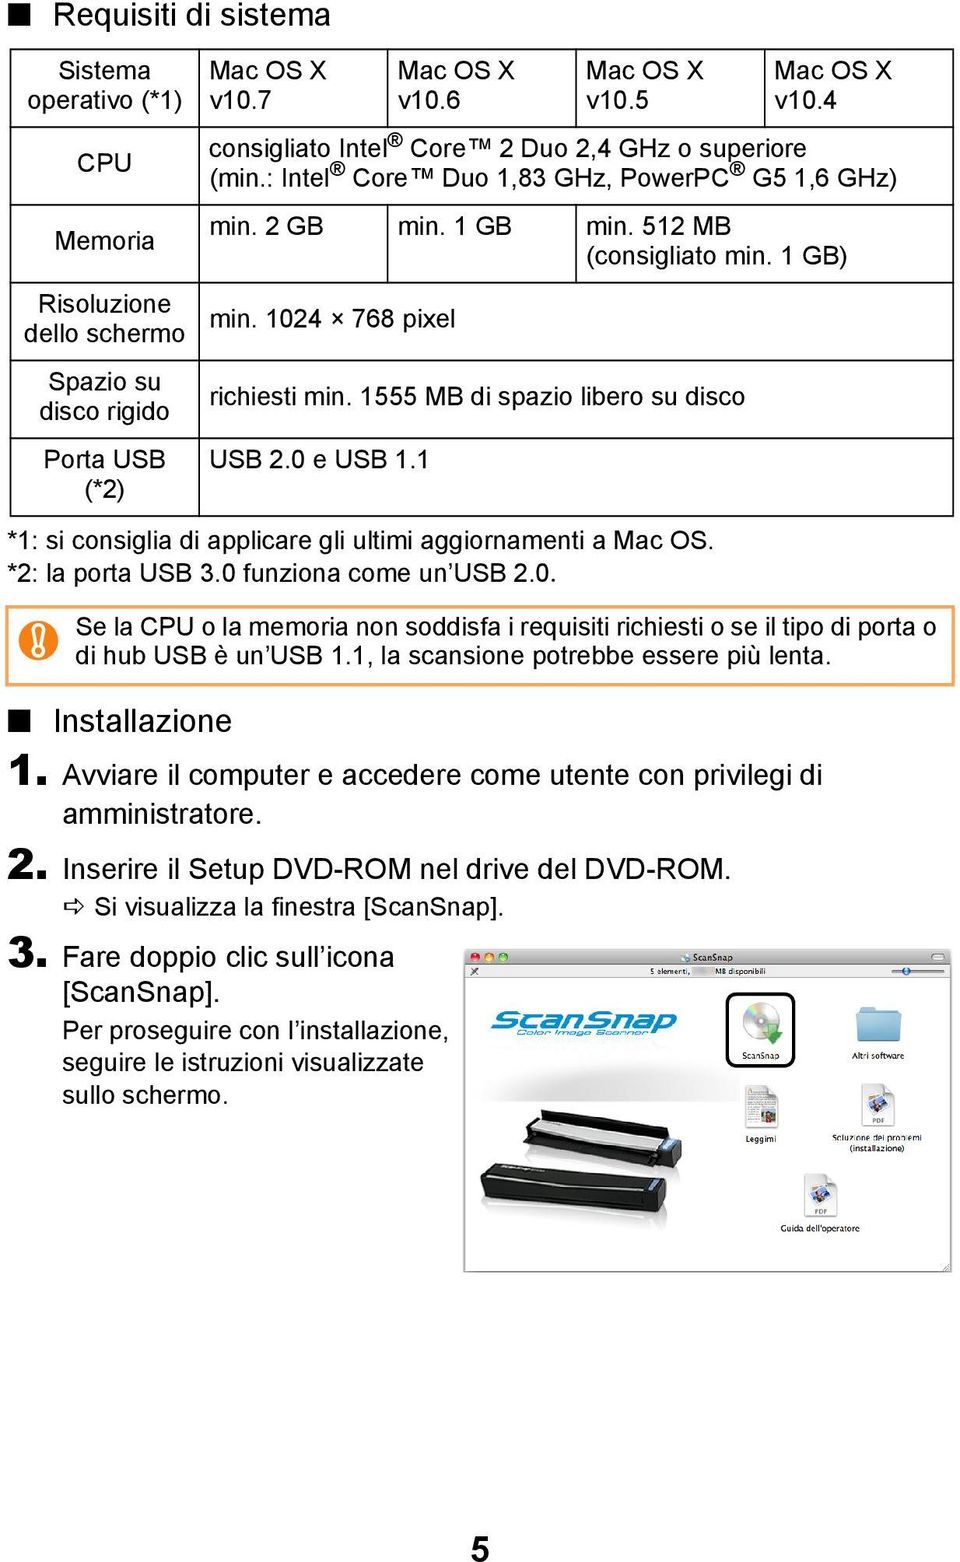 Avviare il computer e accedere come utente con privilegi di amministratore. 2. Inserire il Setup DVD-ROM nel drive del DVD-ROM. Si visualizza la finestra [ScanSnap]. 3.